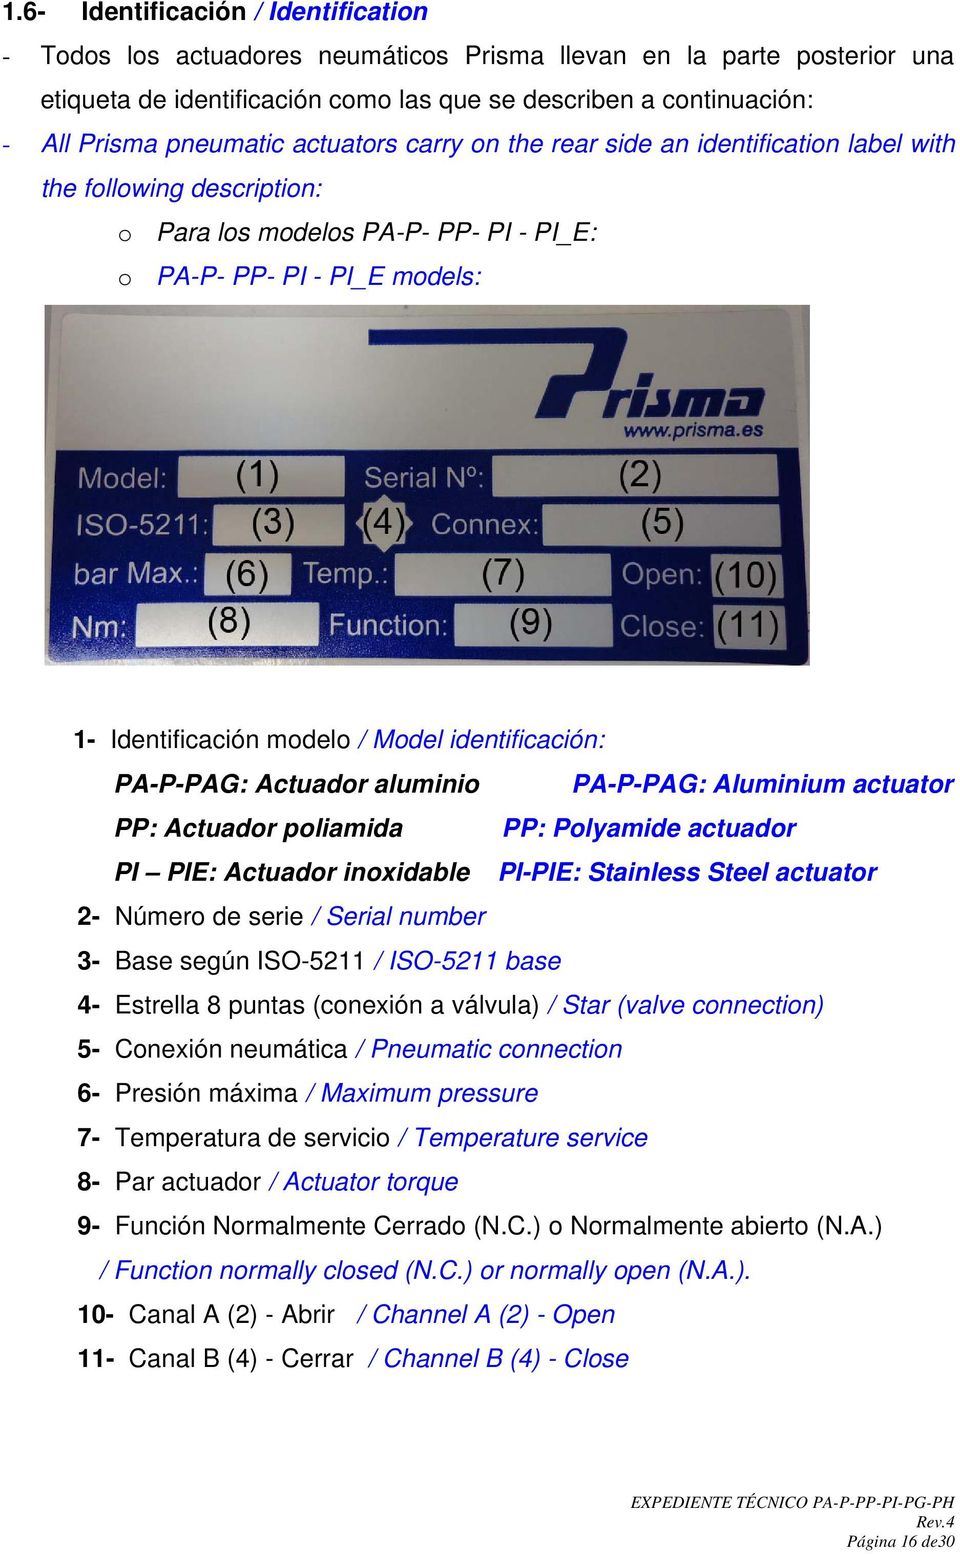 Model identificación: PA-P-PAG: Actuador aluminio PA-P-PAG: Aluminium actuator PP: Actuador poliamida PP: Polyamide actuador PI PIE: Actuador inoxidable PI-PIE: Stainless Steel actuator 2- Número de